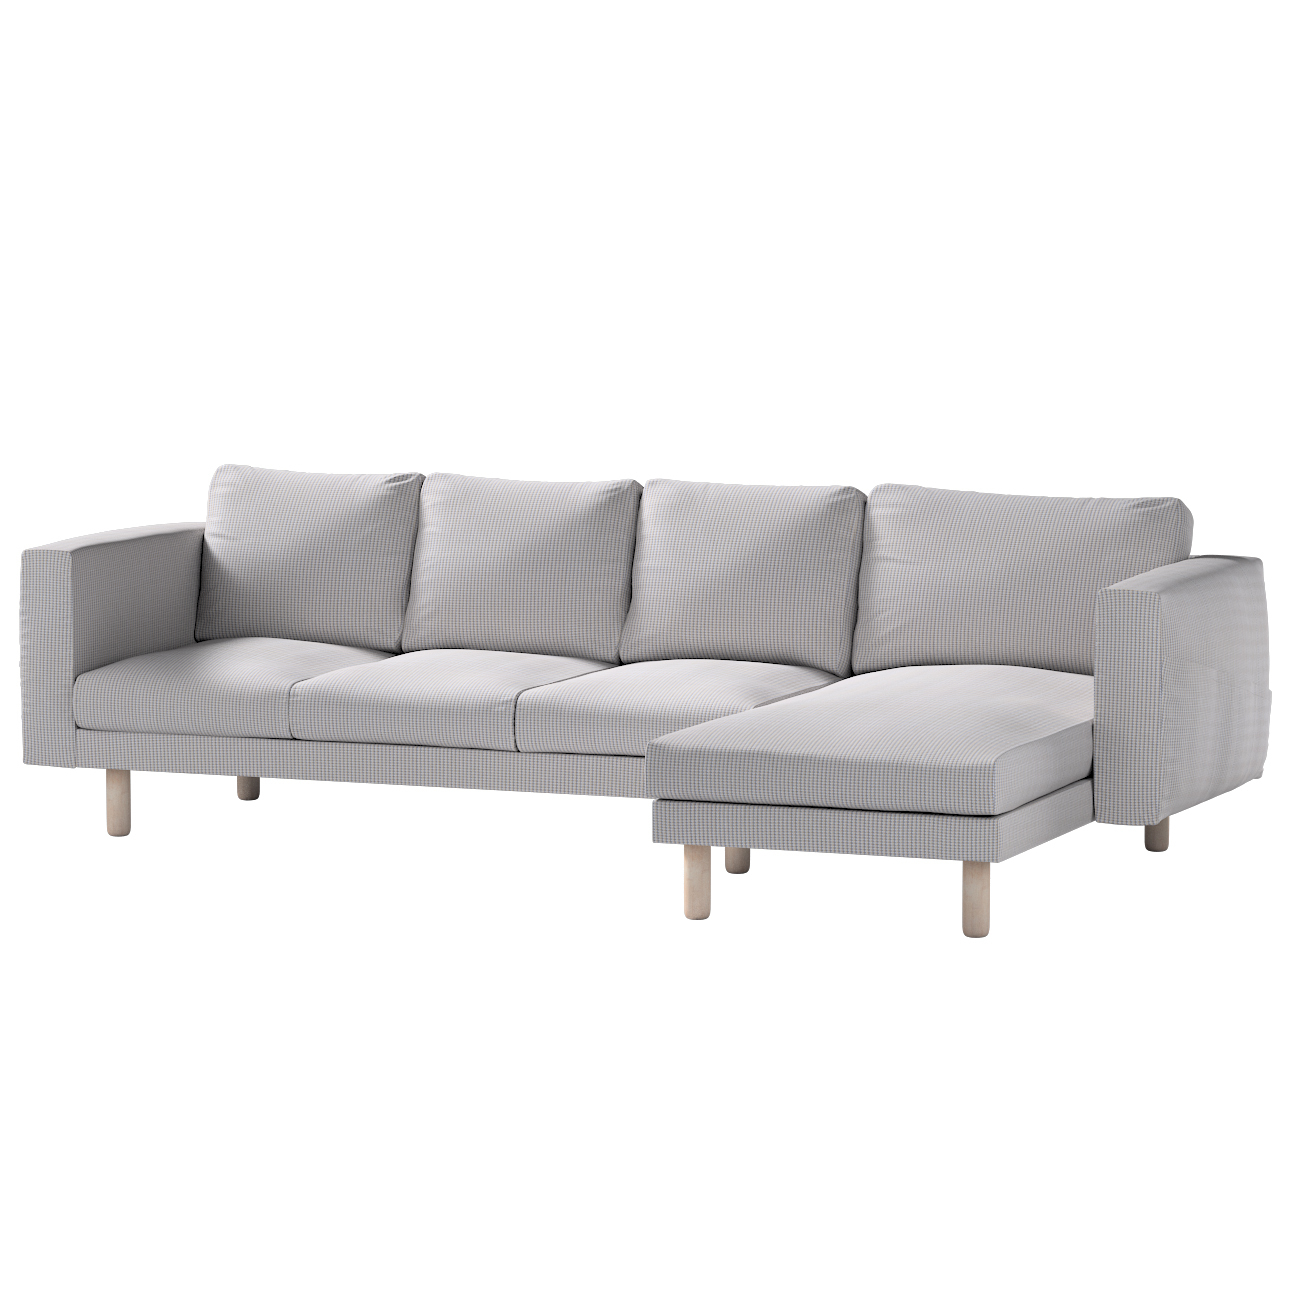 Bezug für Norsborg 4-Sitzer Sofa mit Recamiere, beige-blau, Norsborg Bezug günstig online kaufen